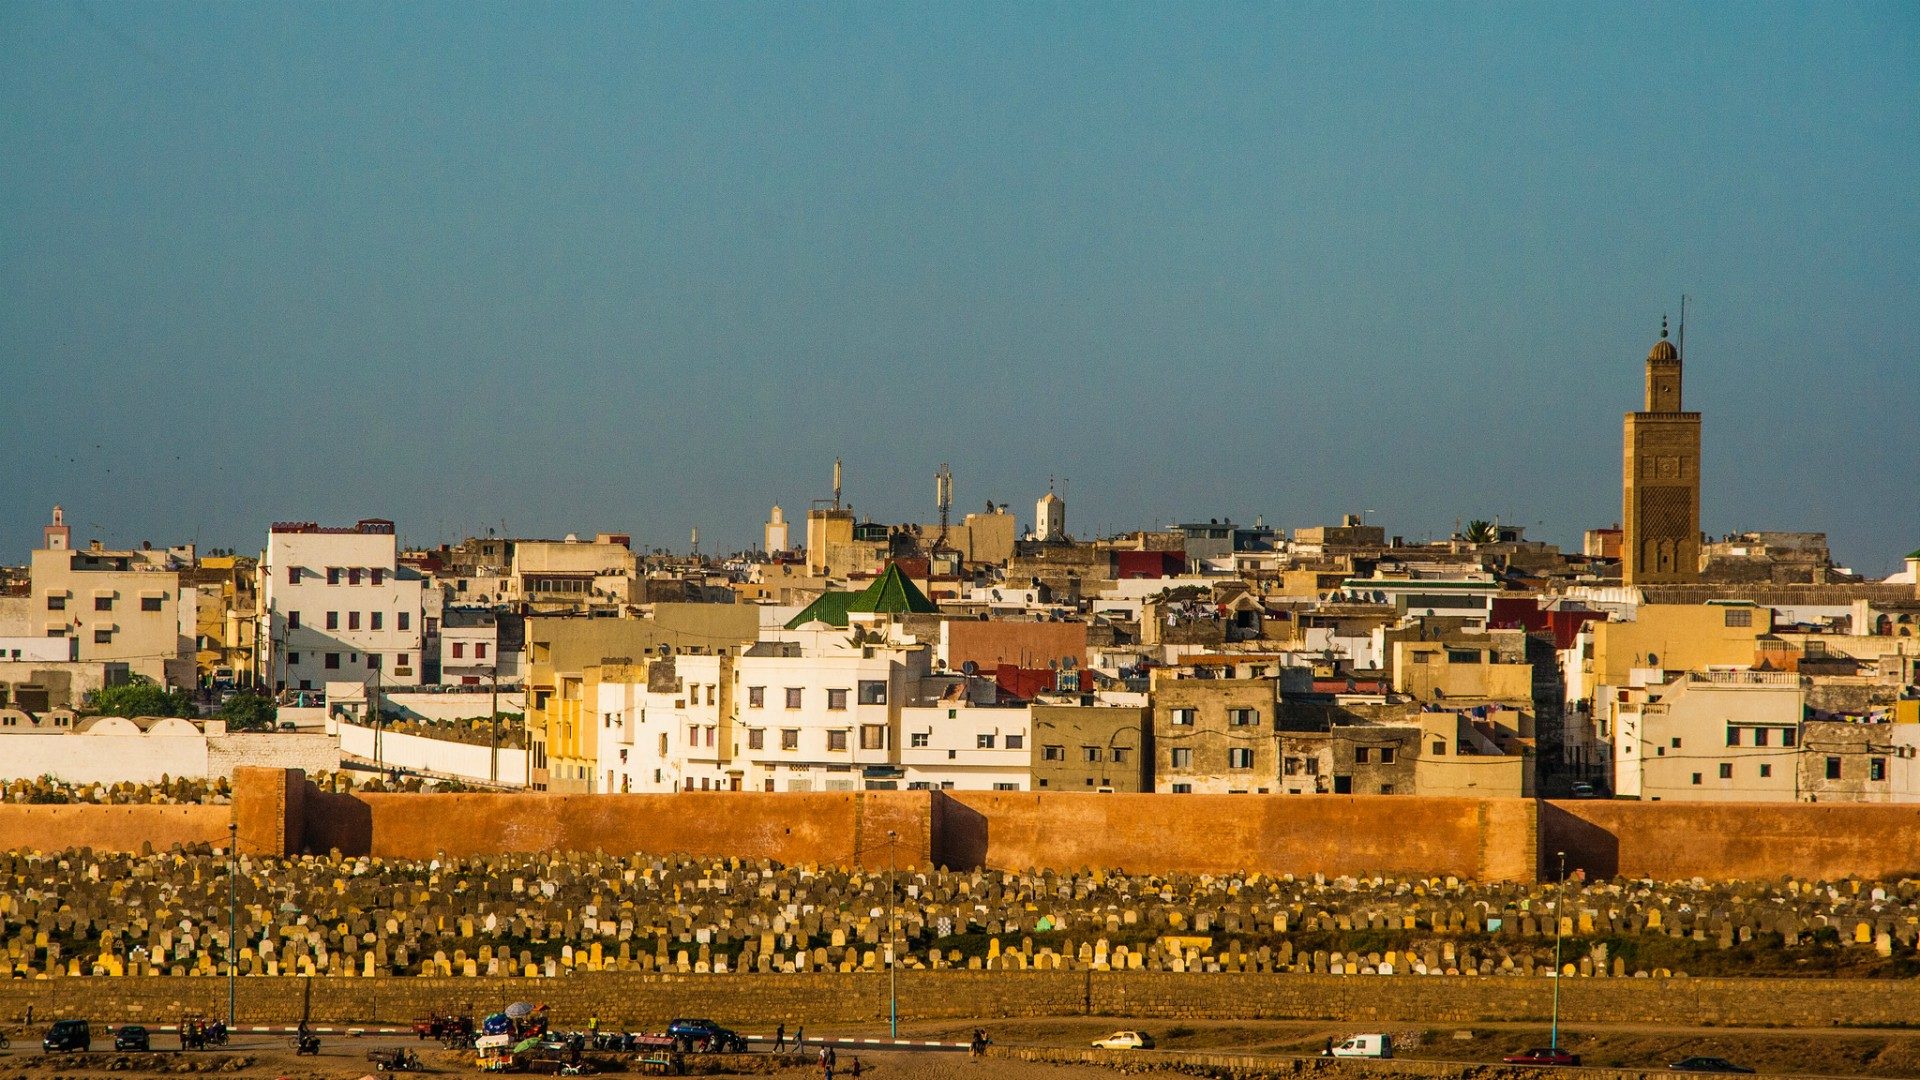 Le pape François se rendra à Rabat, la capitale du Maroc | © Christopher Rose/Flickr/CC BY-NC 2.0